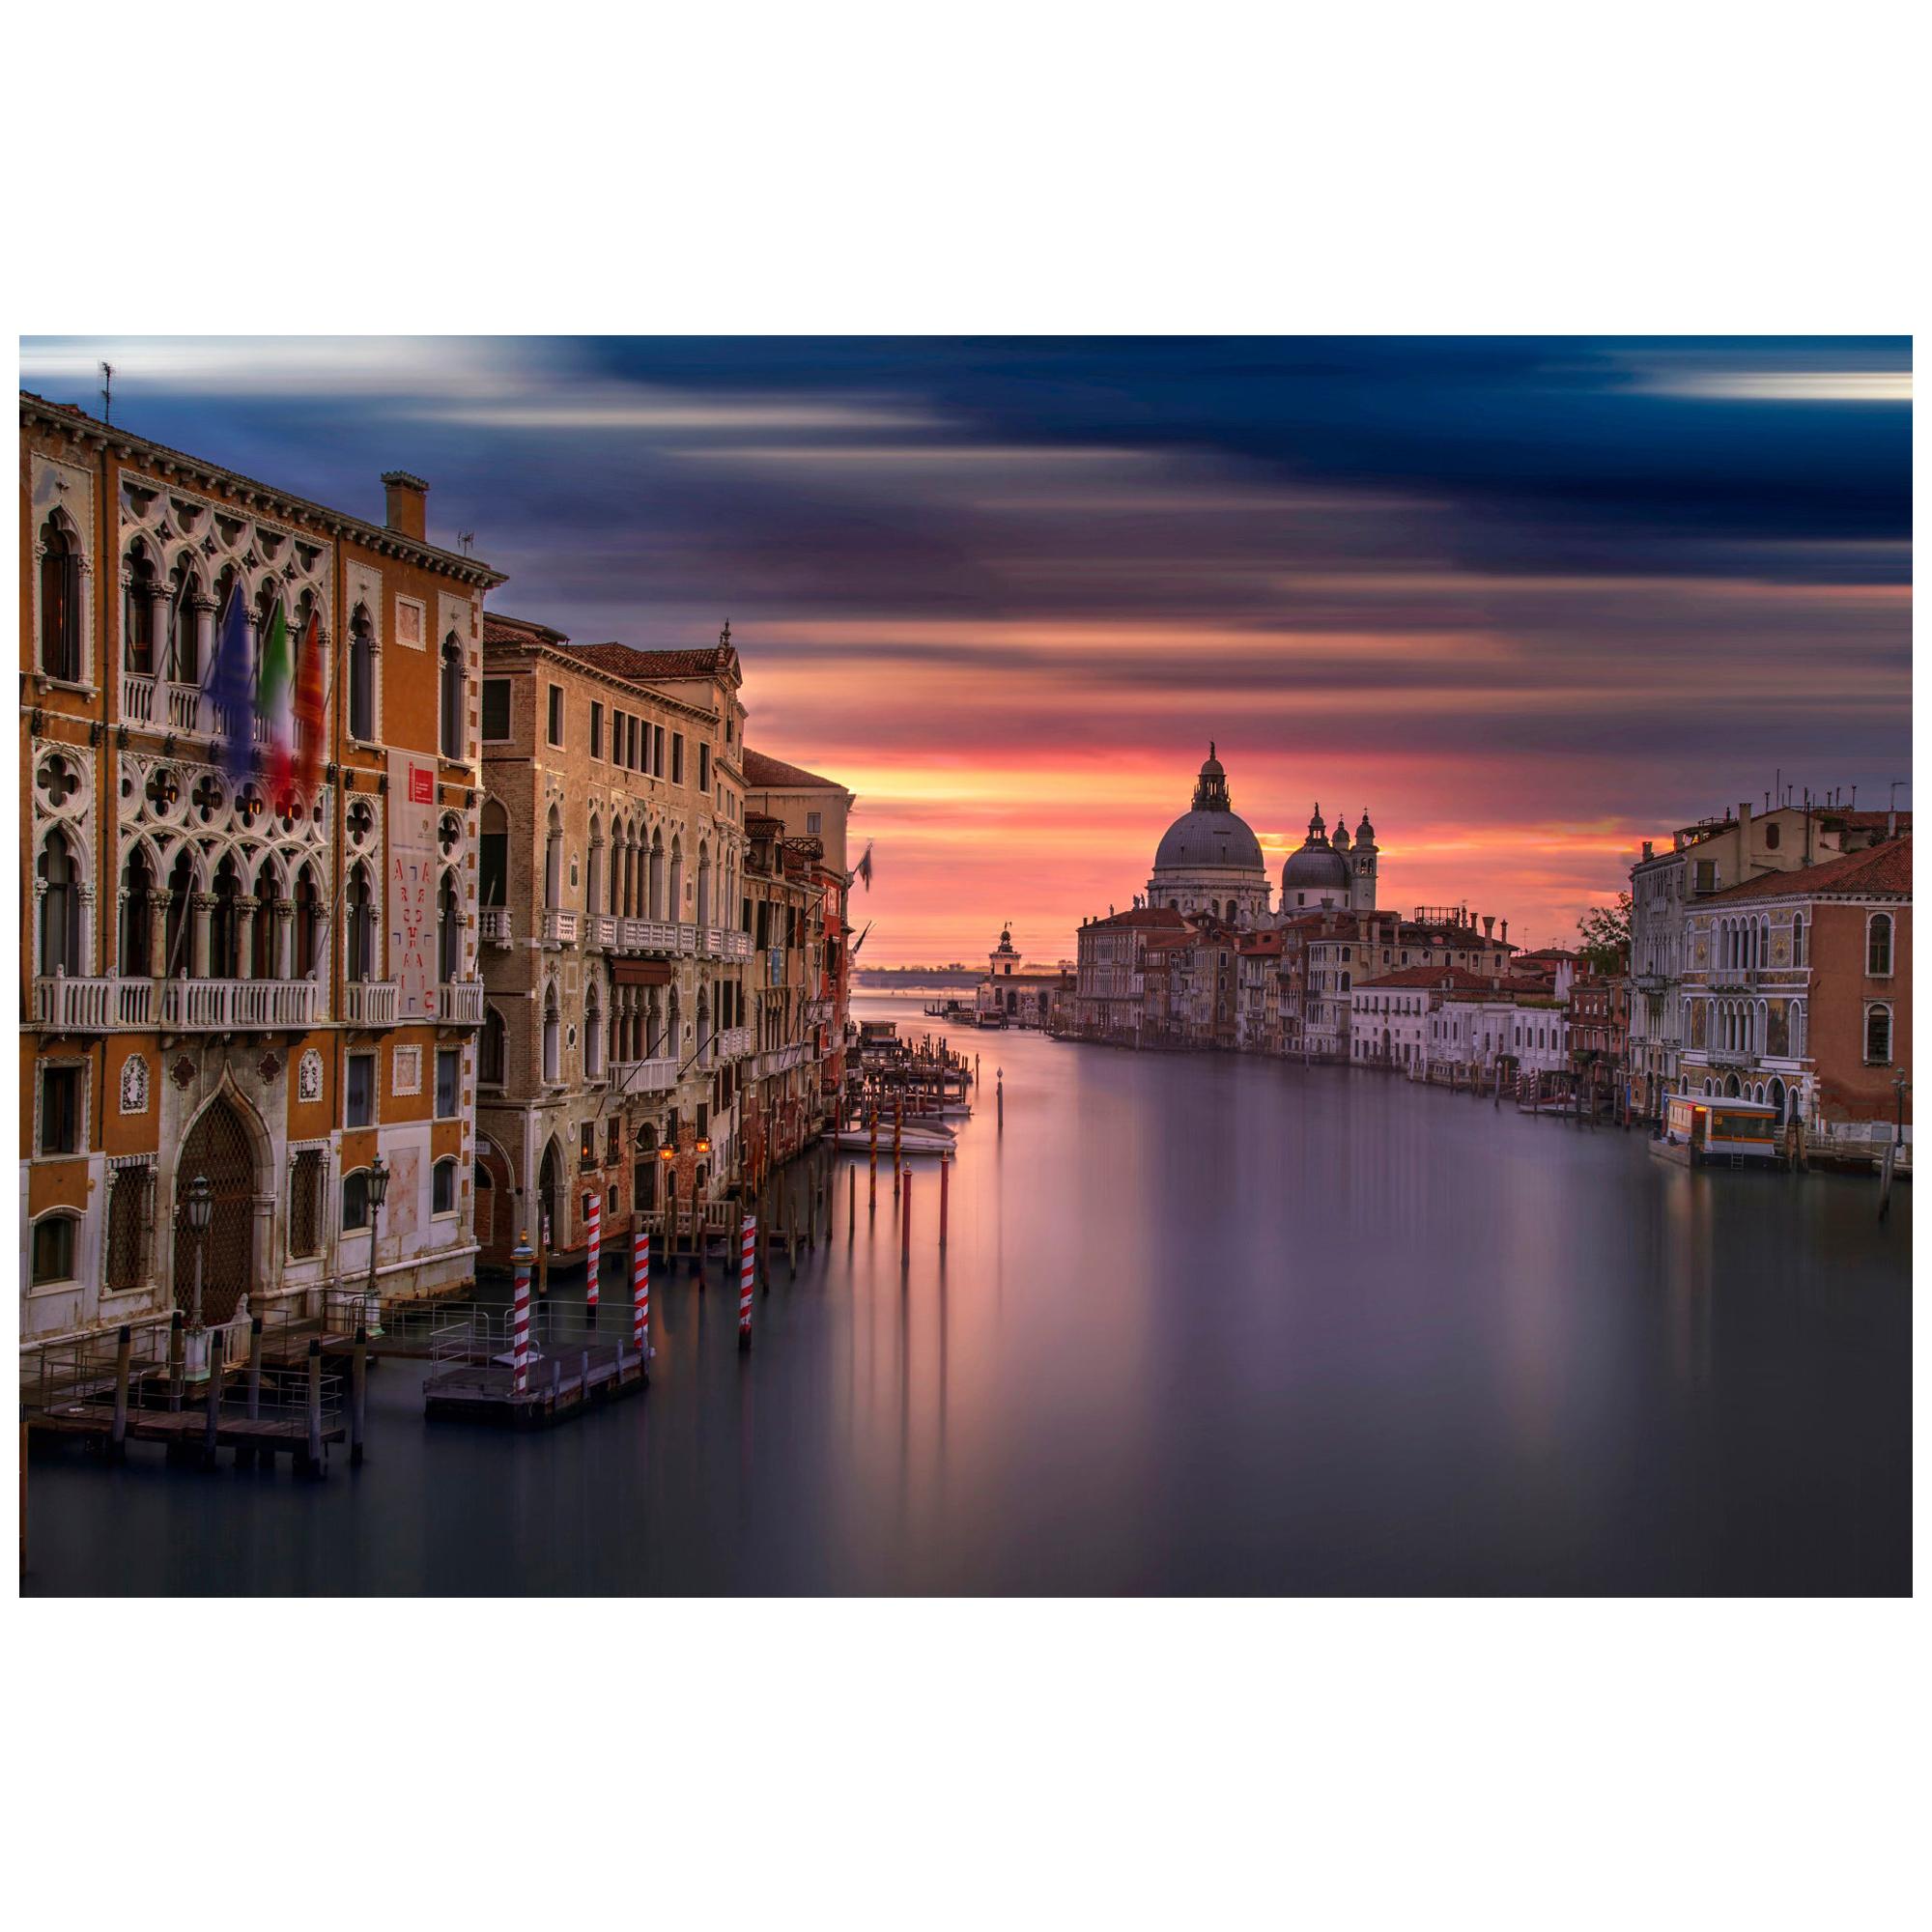 Photographie couleur du lever du soleil de Venise, impression d'art de Rainer Martini